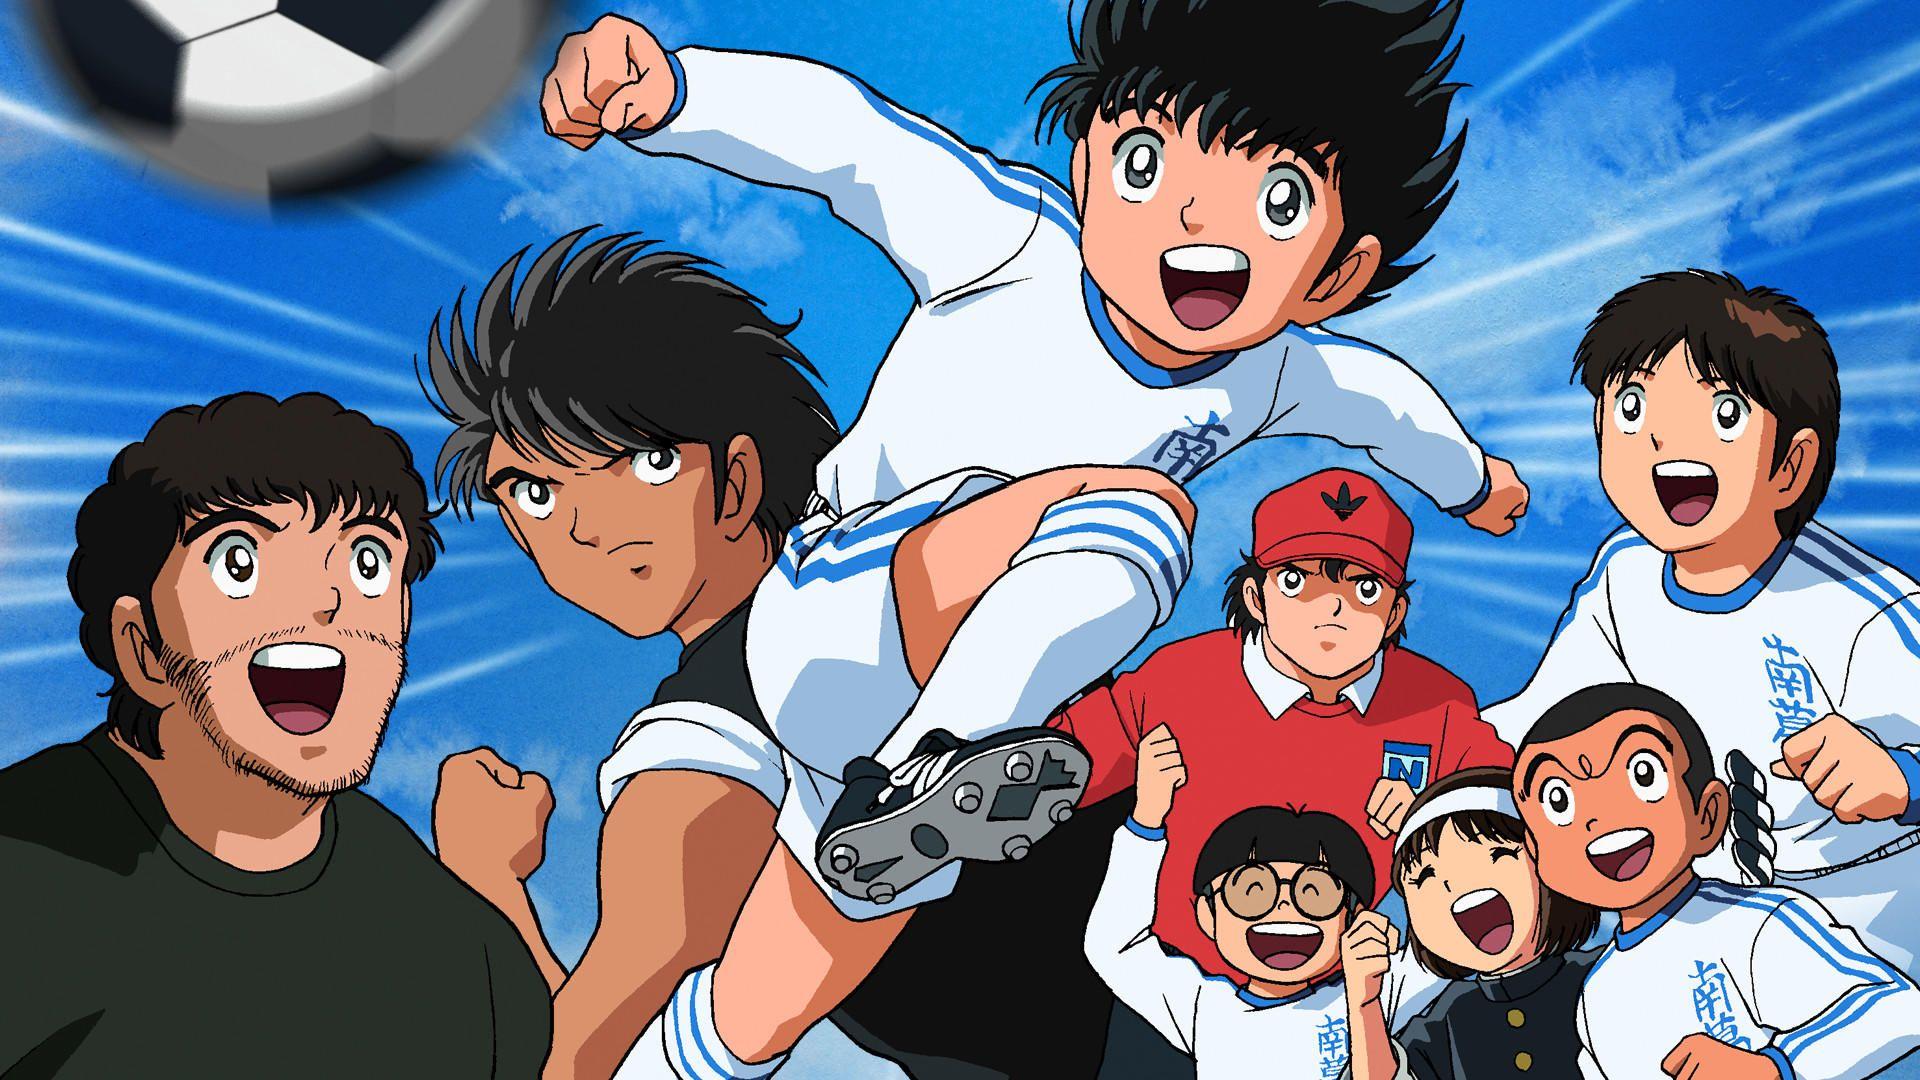 Tecmo's Captain Tsubasa Series: A Creative Way To Adapt a Manga